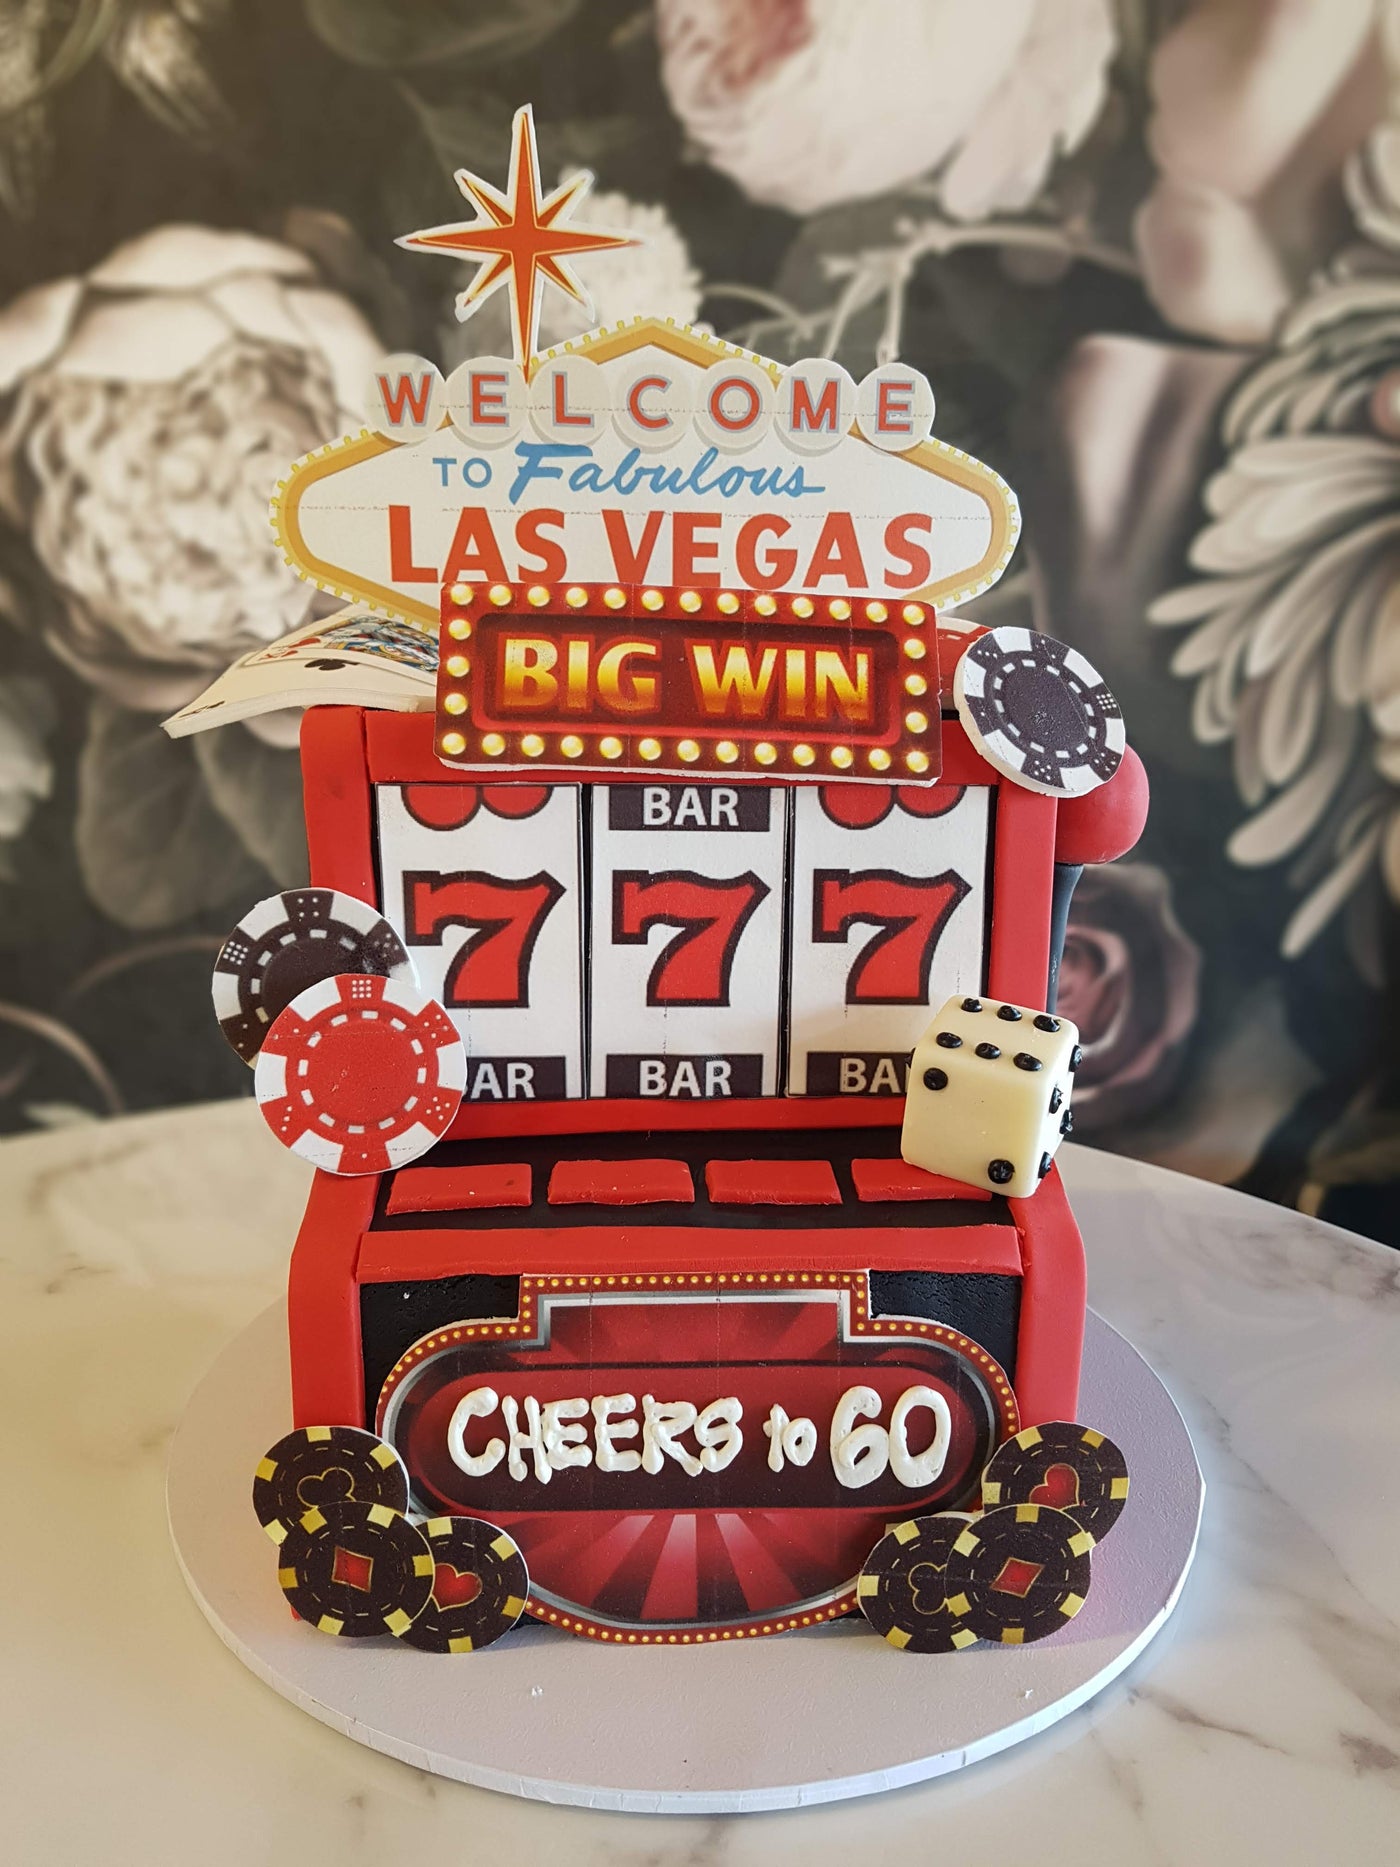 Amazing Las Vegas cake (I'm not OP) : r/LasVegas